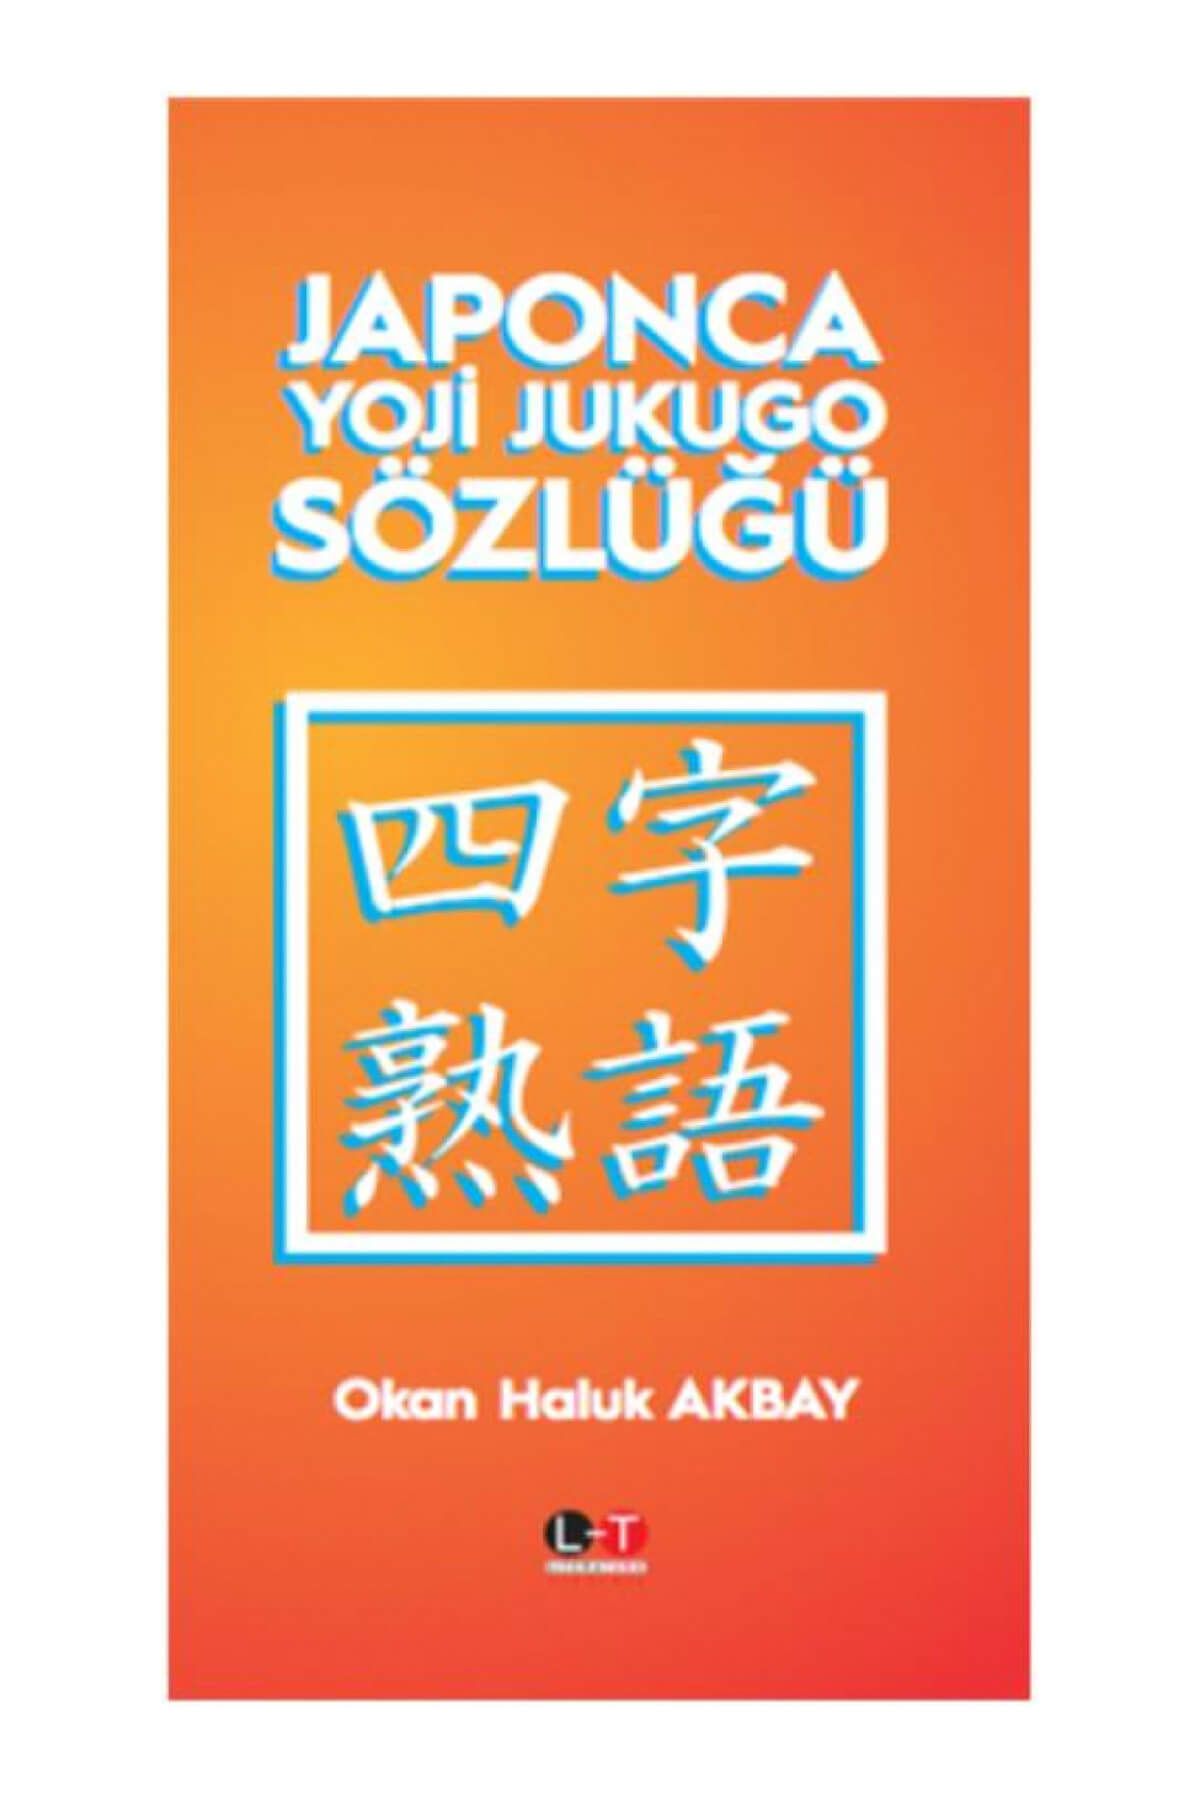 Literatürk Academia Japonca Yoji Jukugo Sözlüğü - Okan Haluk Akbay